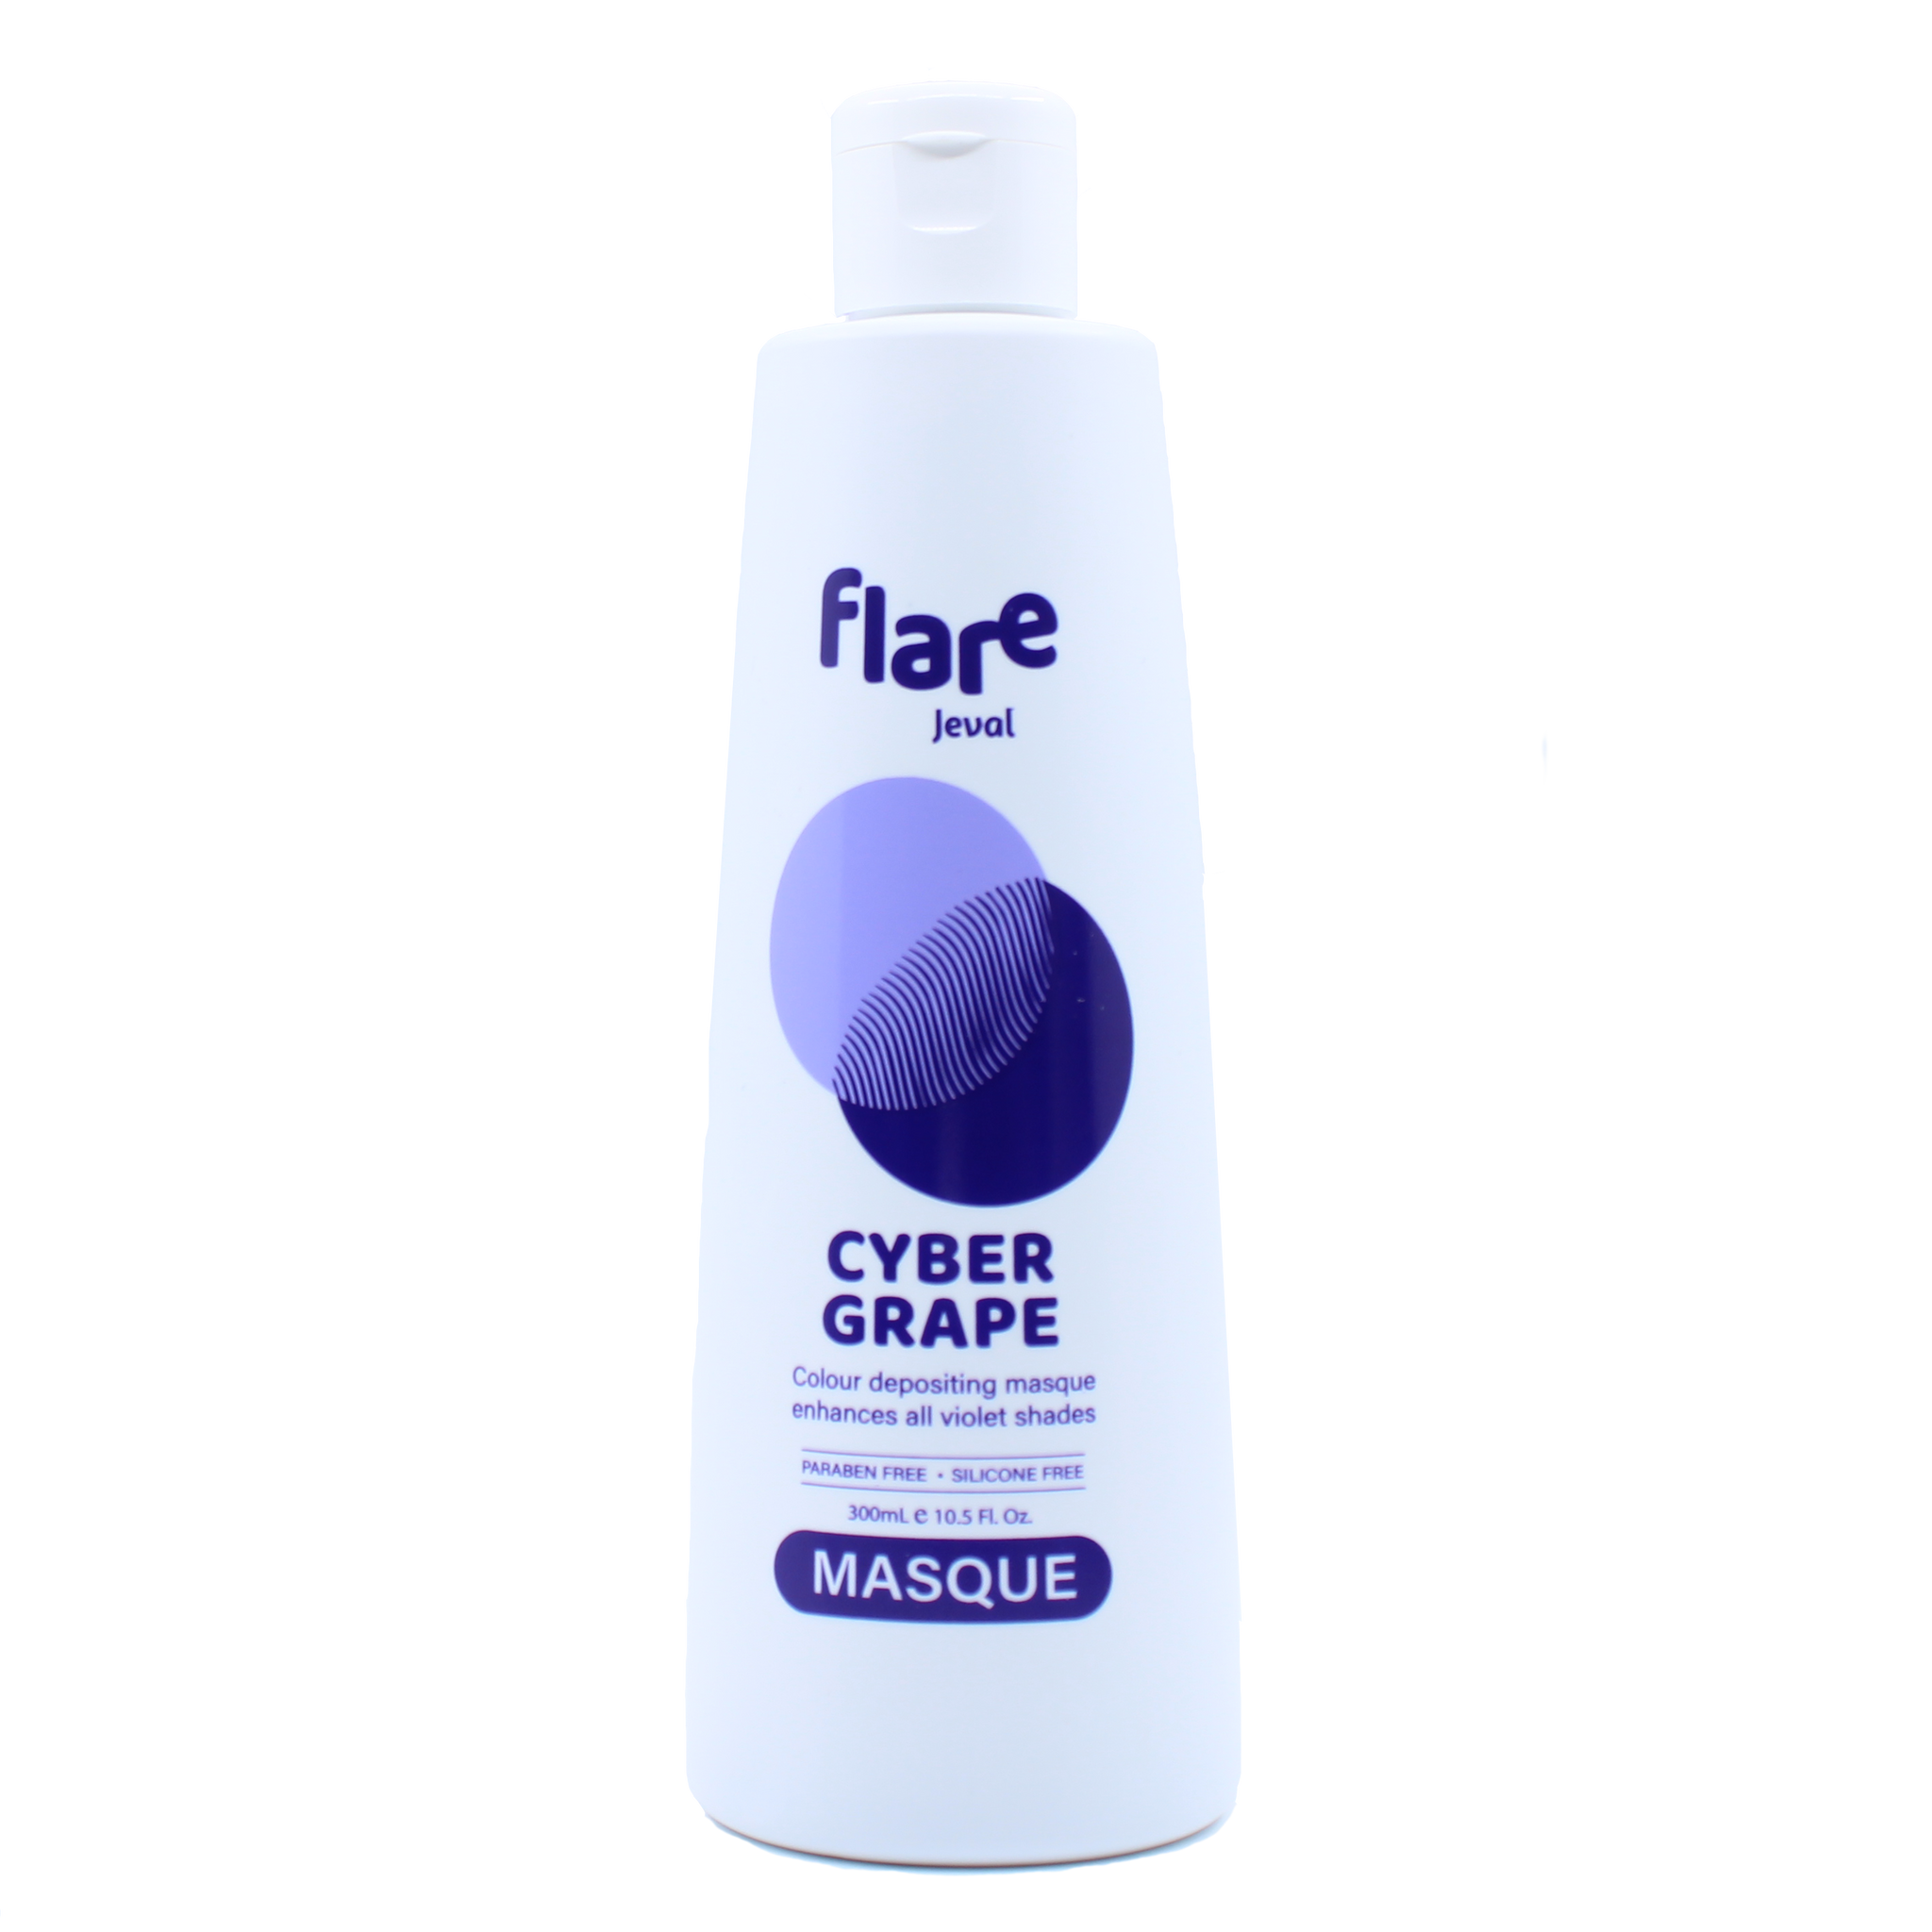 Jeval Flare Cyber Grape Masque 300ml